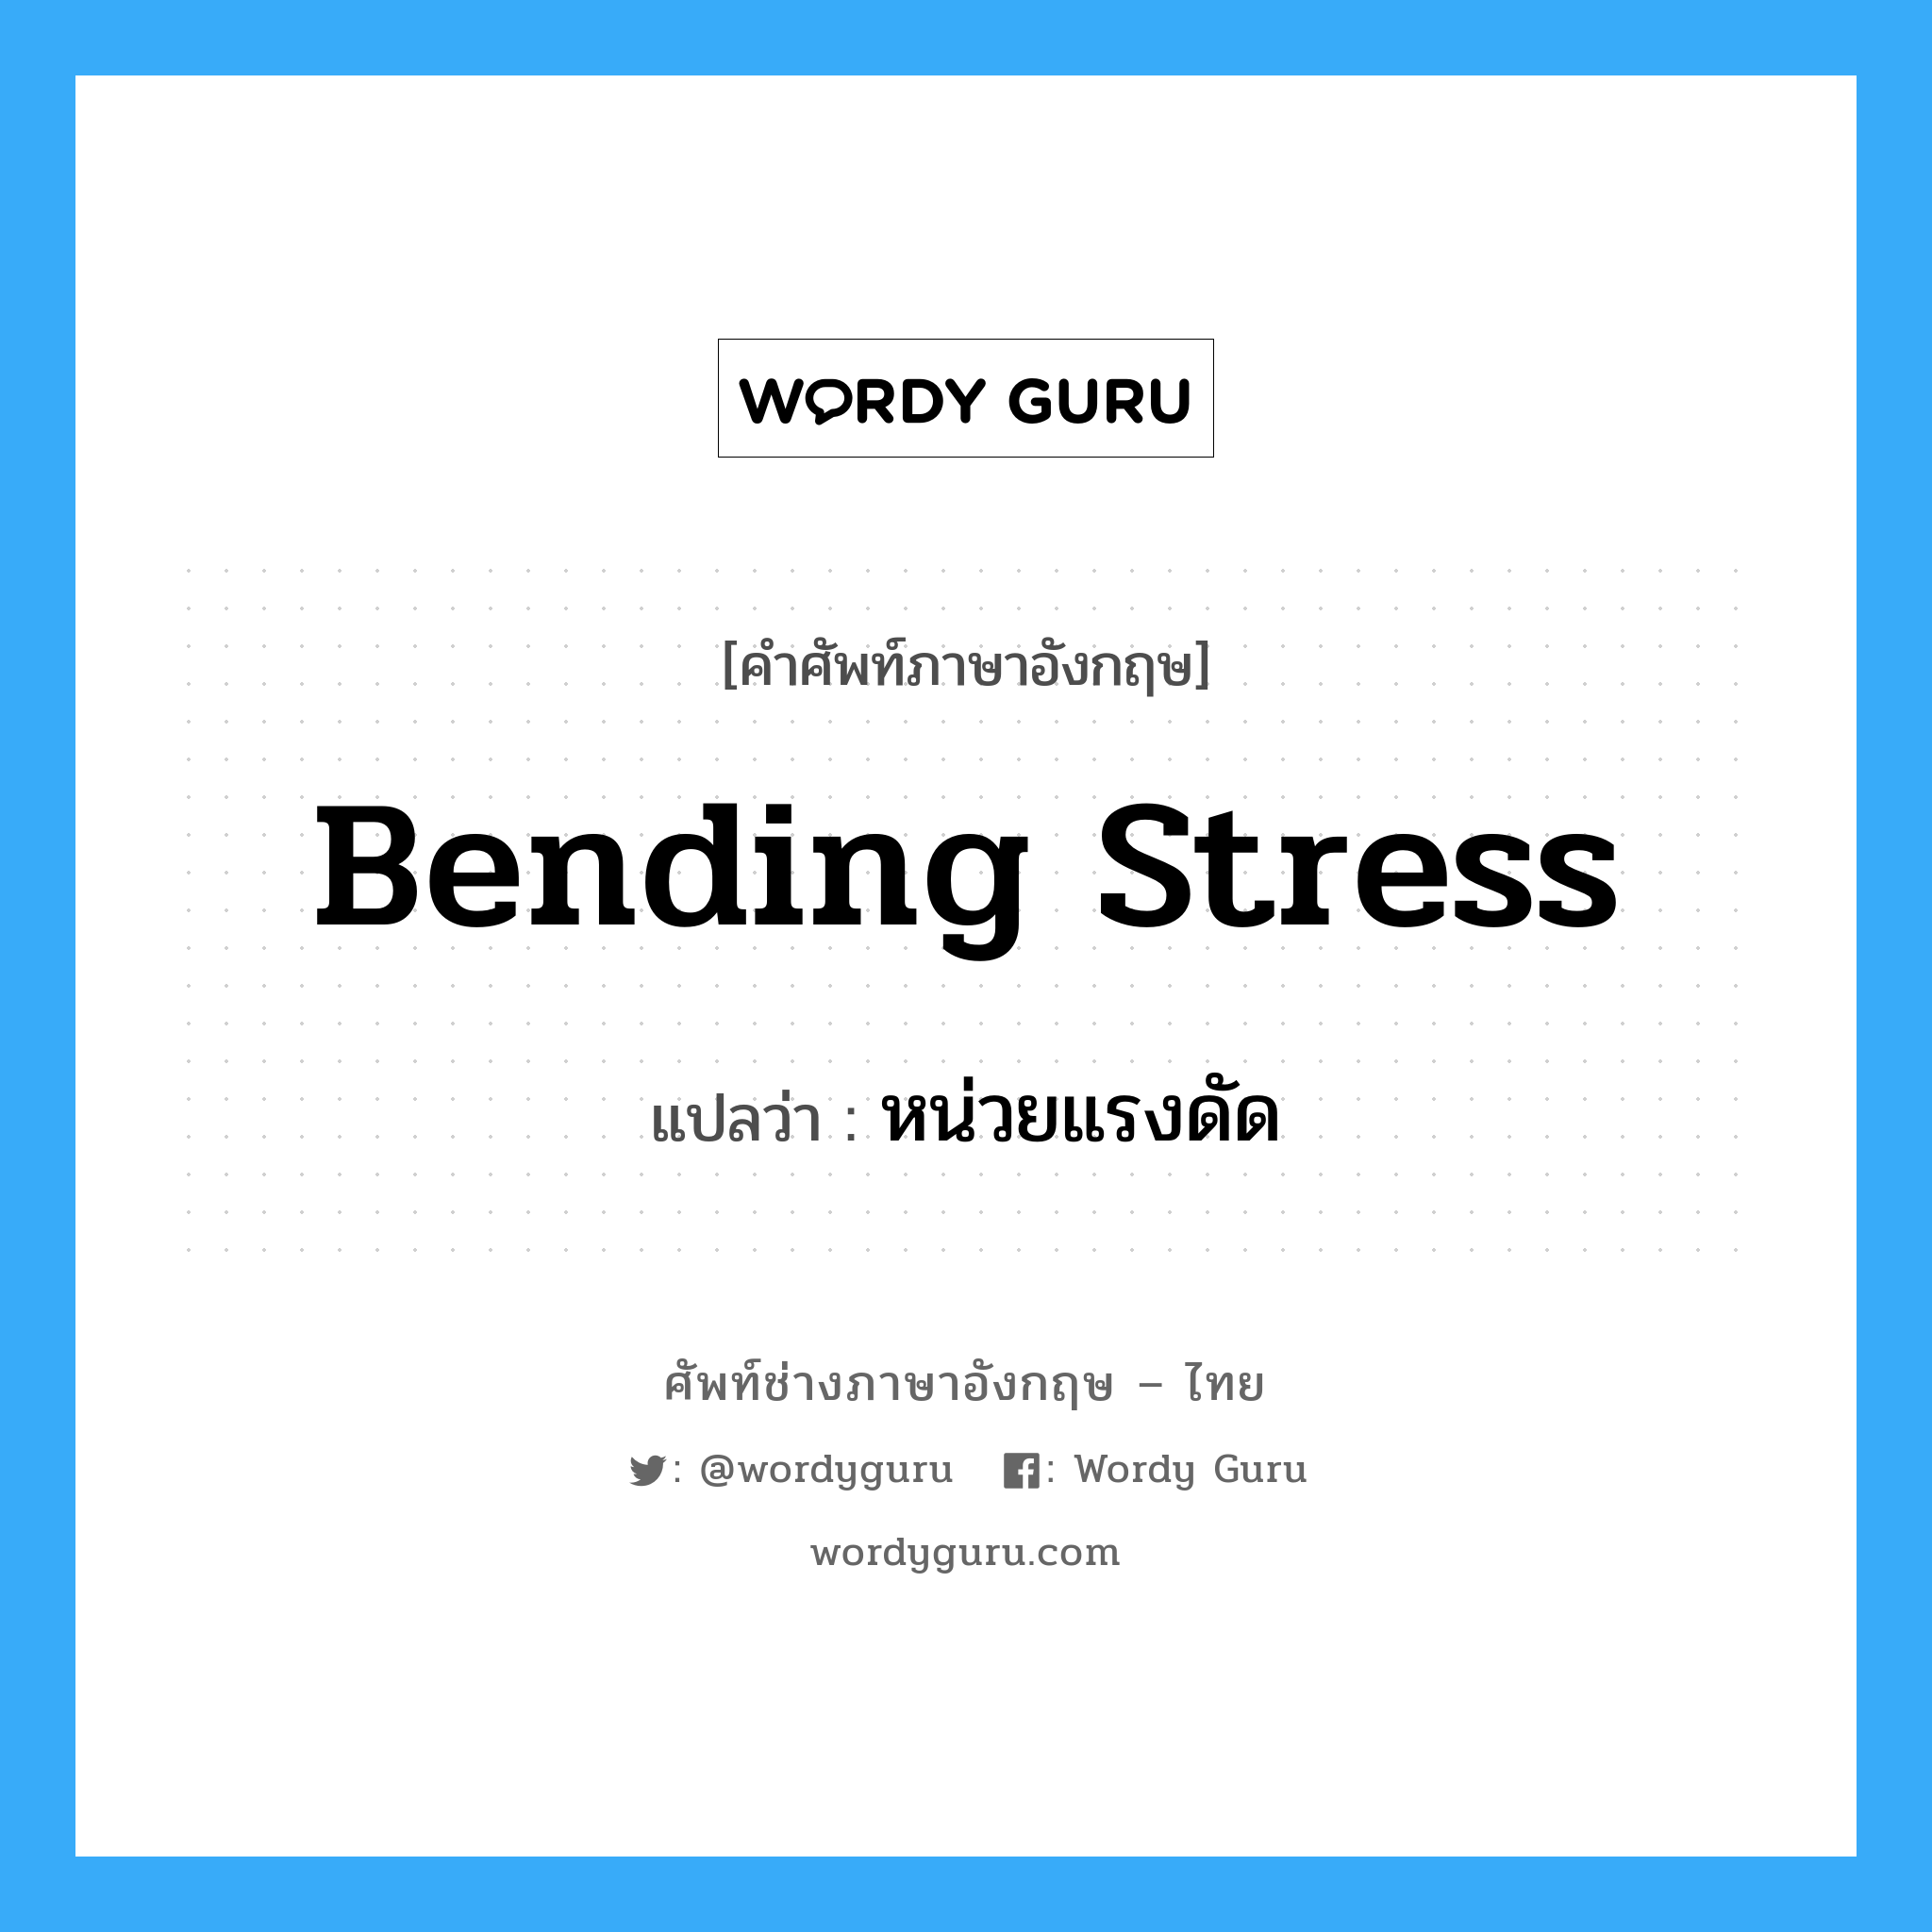 หน่วยแรงดัด ภาษาอังกฤษ?, คำศัพท์ช่างภาษาอังกฤษ - ไทย หน่วยแรงดัด คำศัพท์ภาษาอังกฤษ หน่วยแรงดัด แปลว่า bending stress